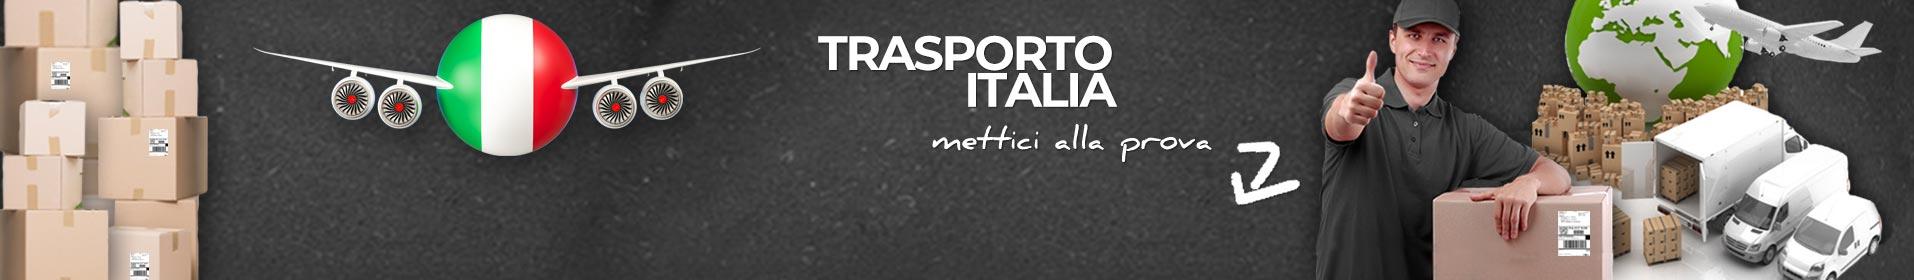 banner trasporto italia